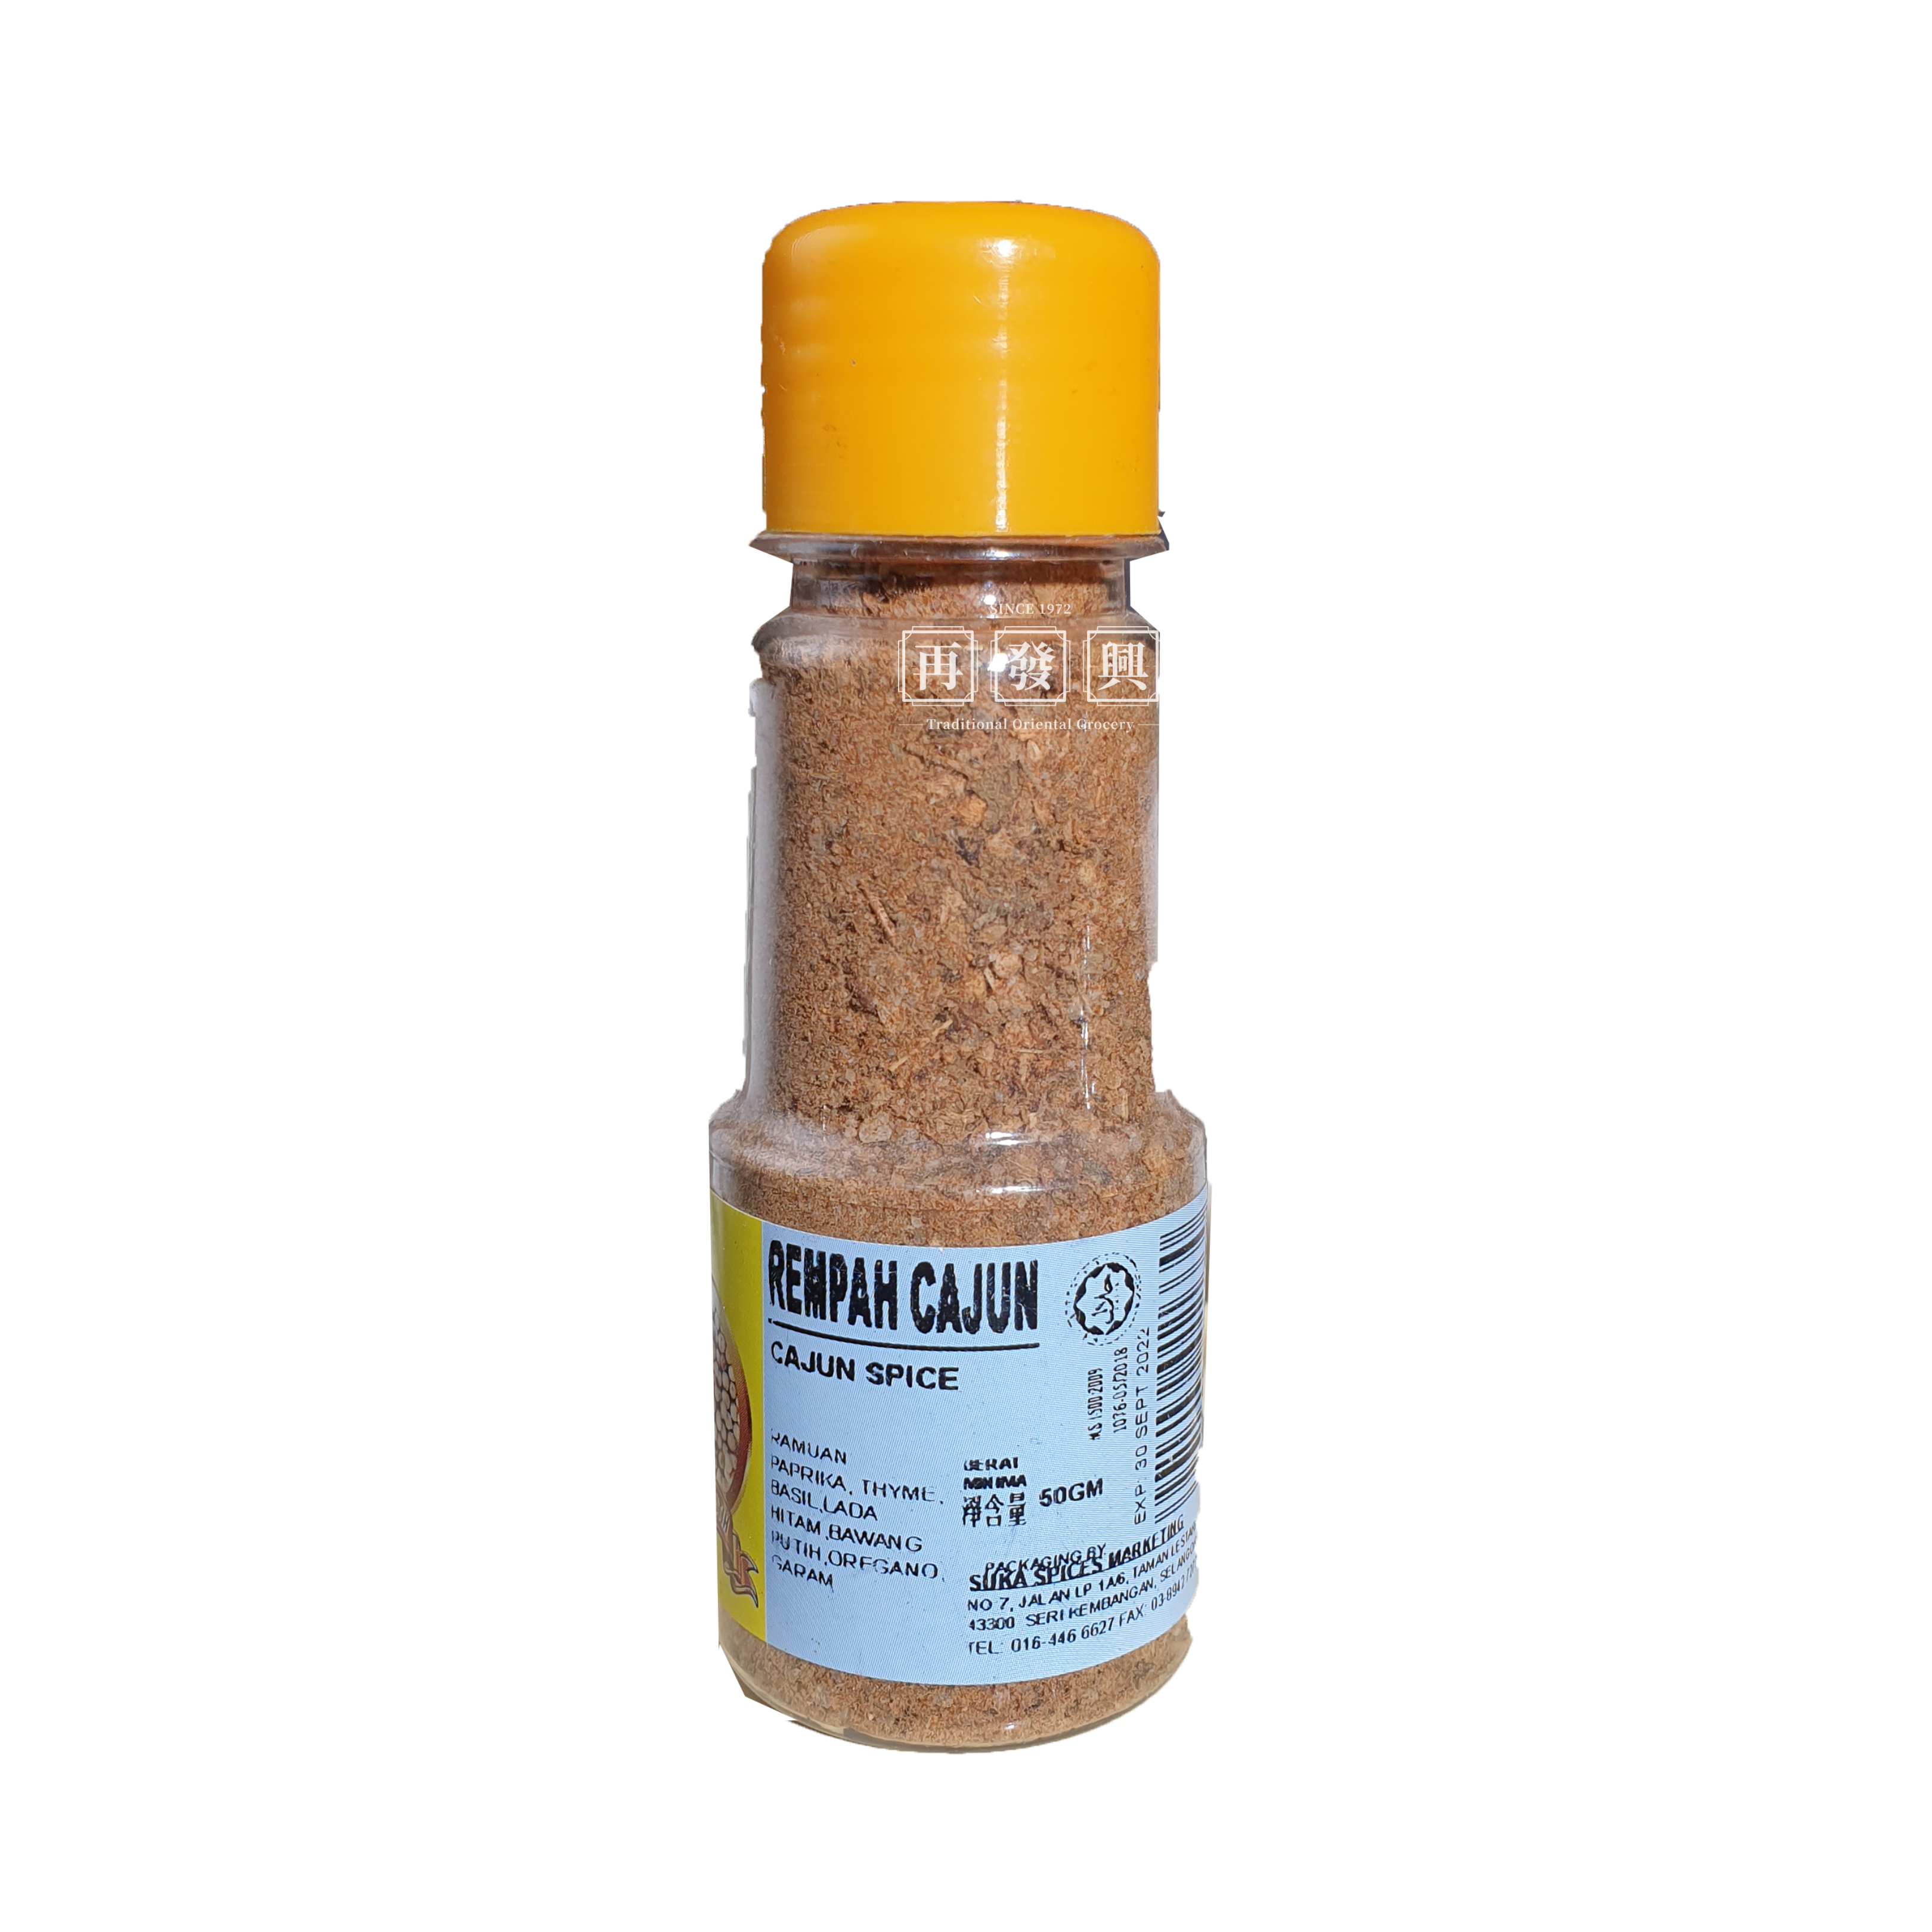 Suka 01 Cajun Spice (Rempah Cajun) 50g 印地安香料